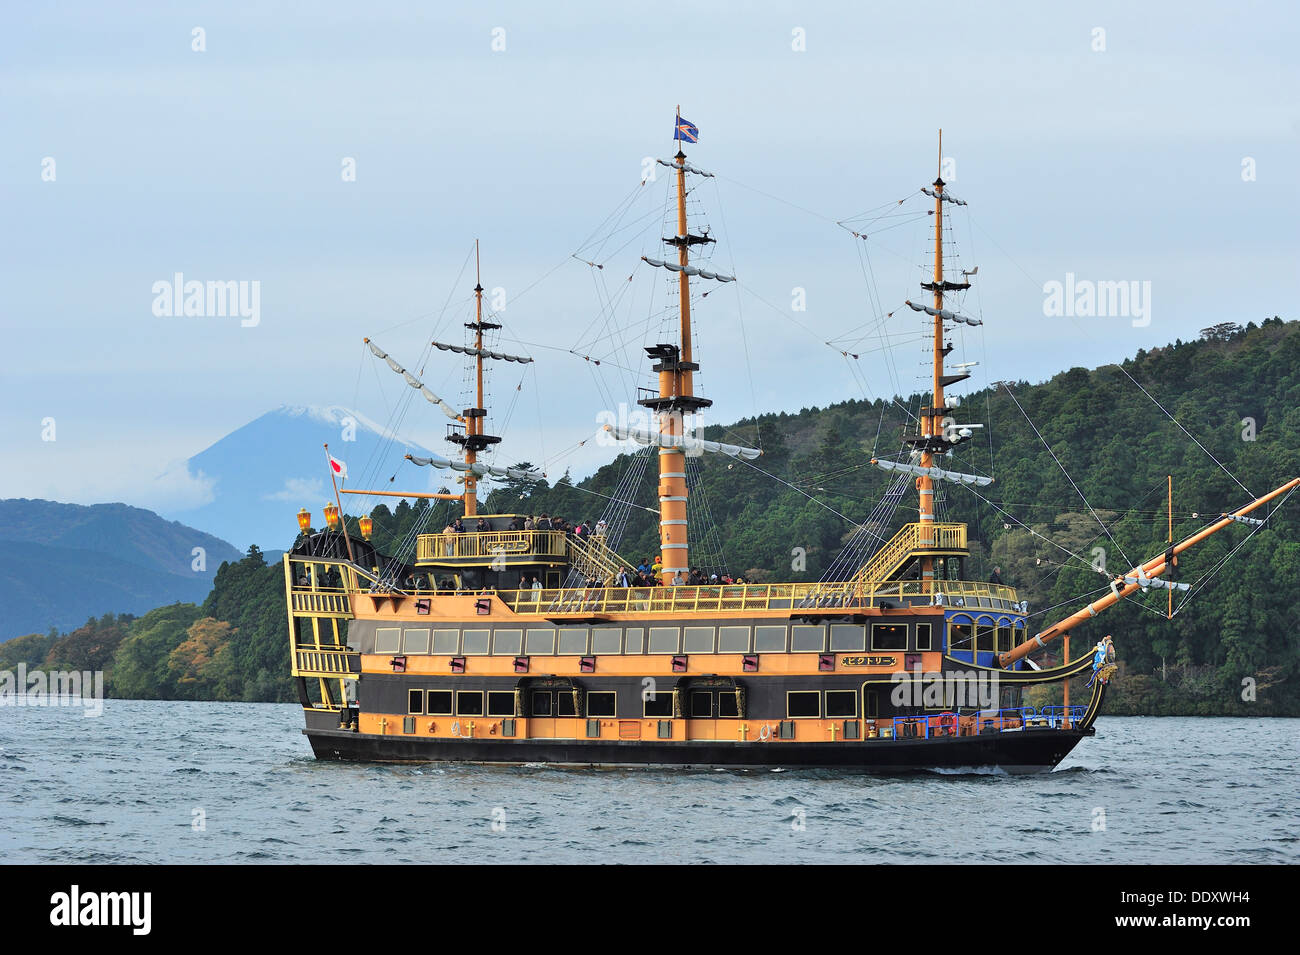 Pirate Cruise on Lake Ashi, Japan Stock Photo